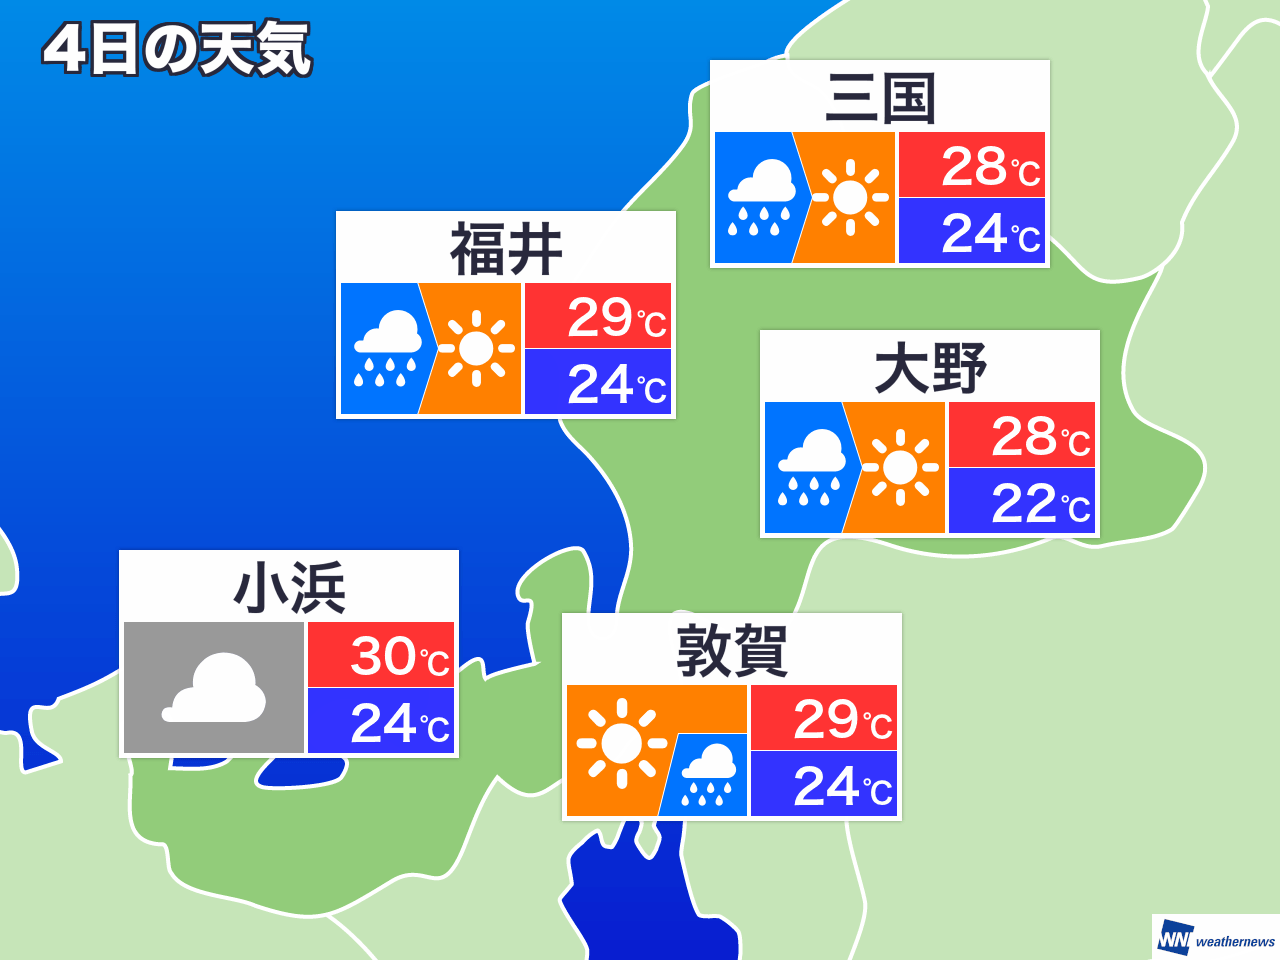 12月17日 金 福井県の明日の天気 ウェザーニュース